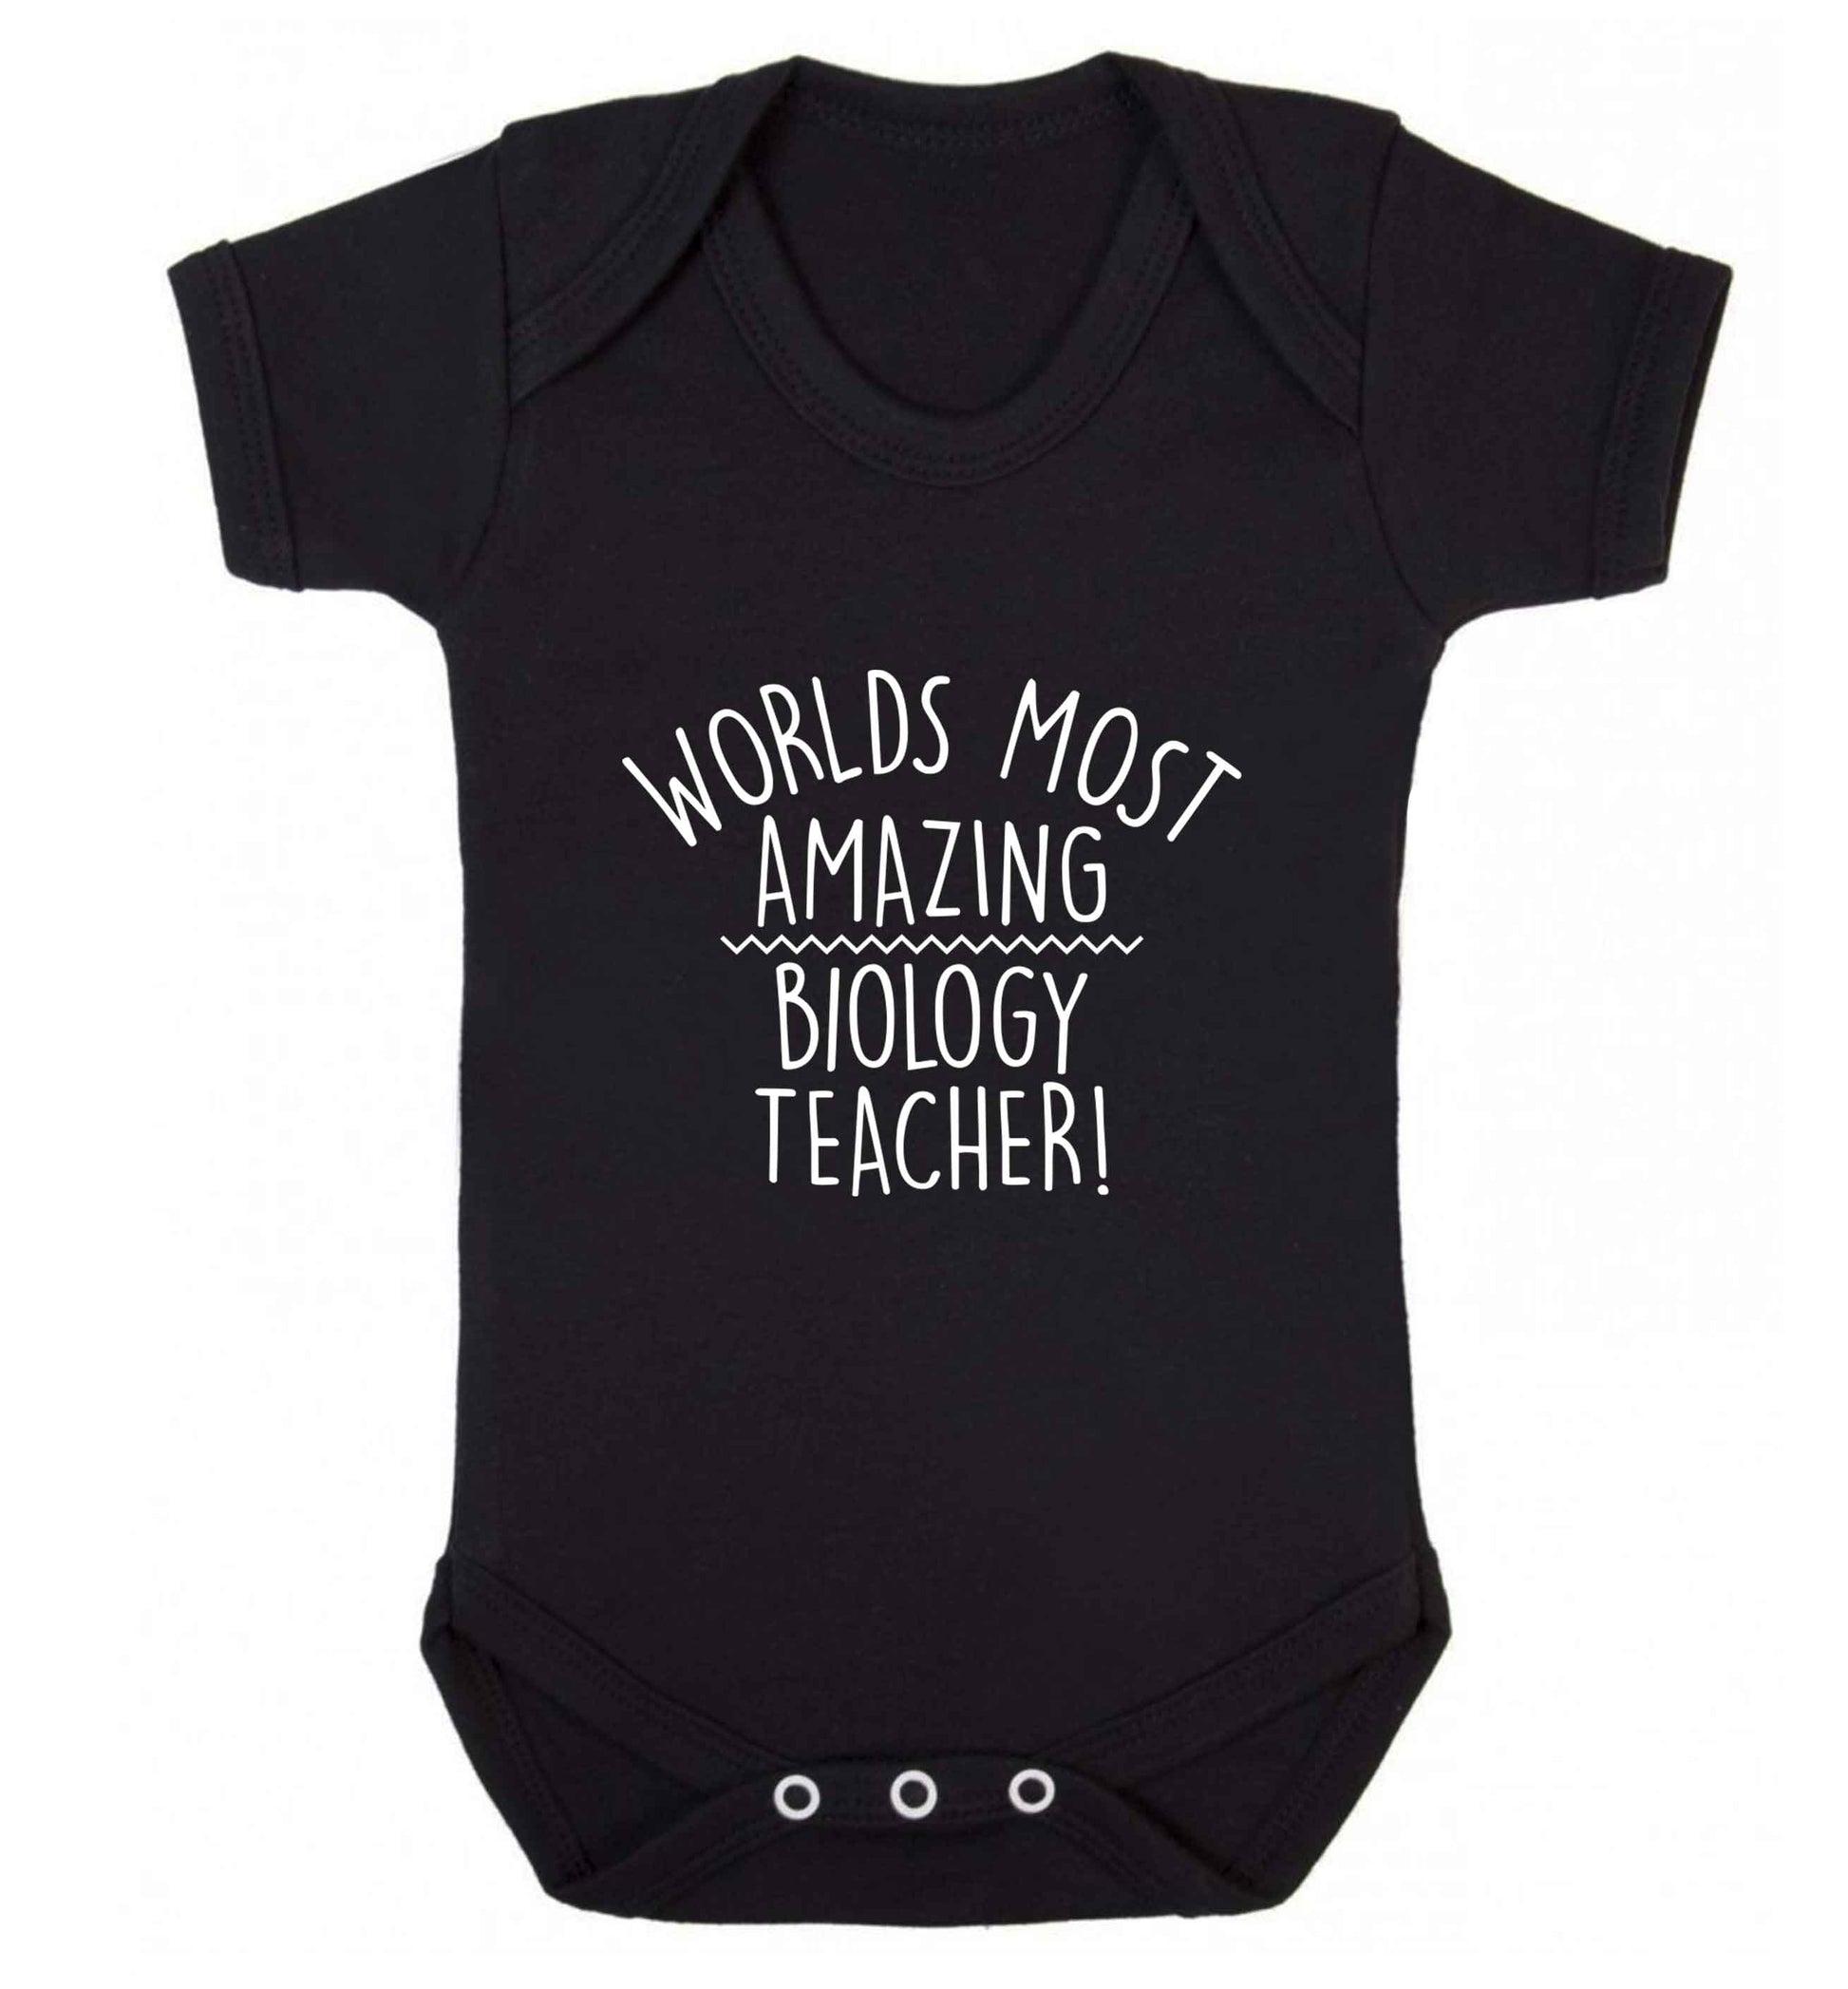 Worlds most amazing biology teacher baby vest black 18-24 months